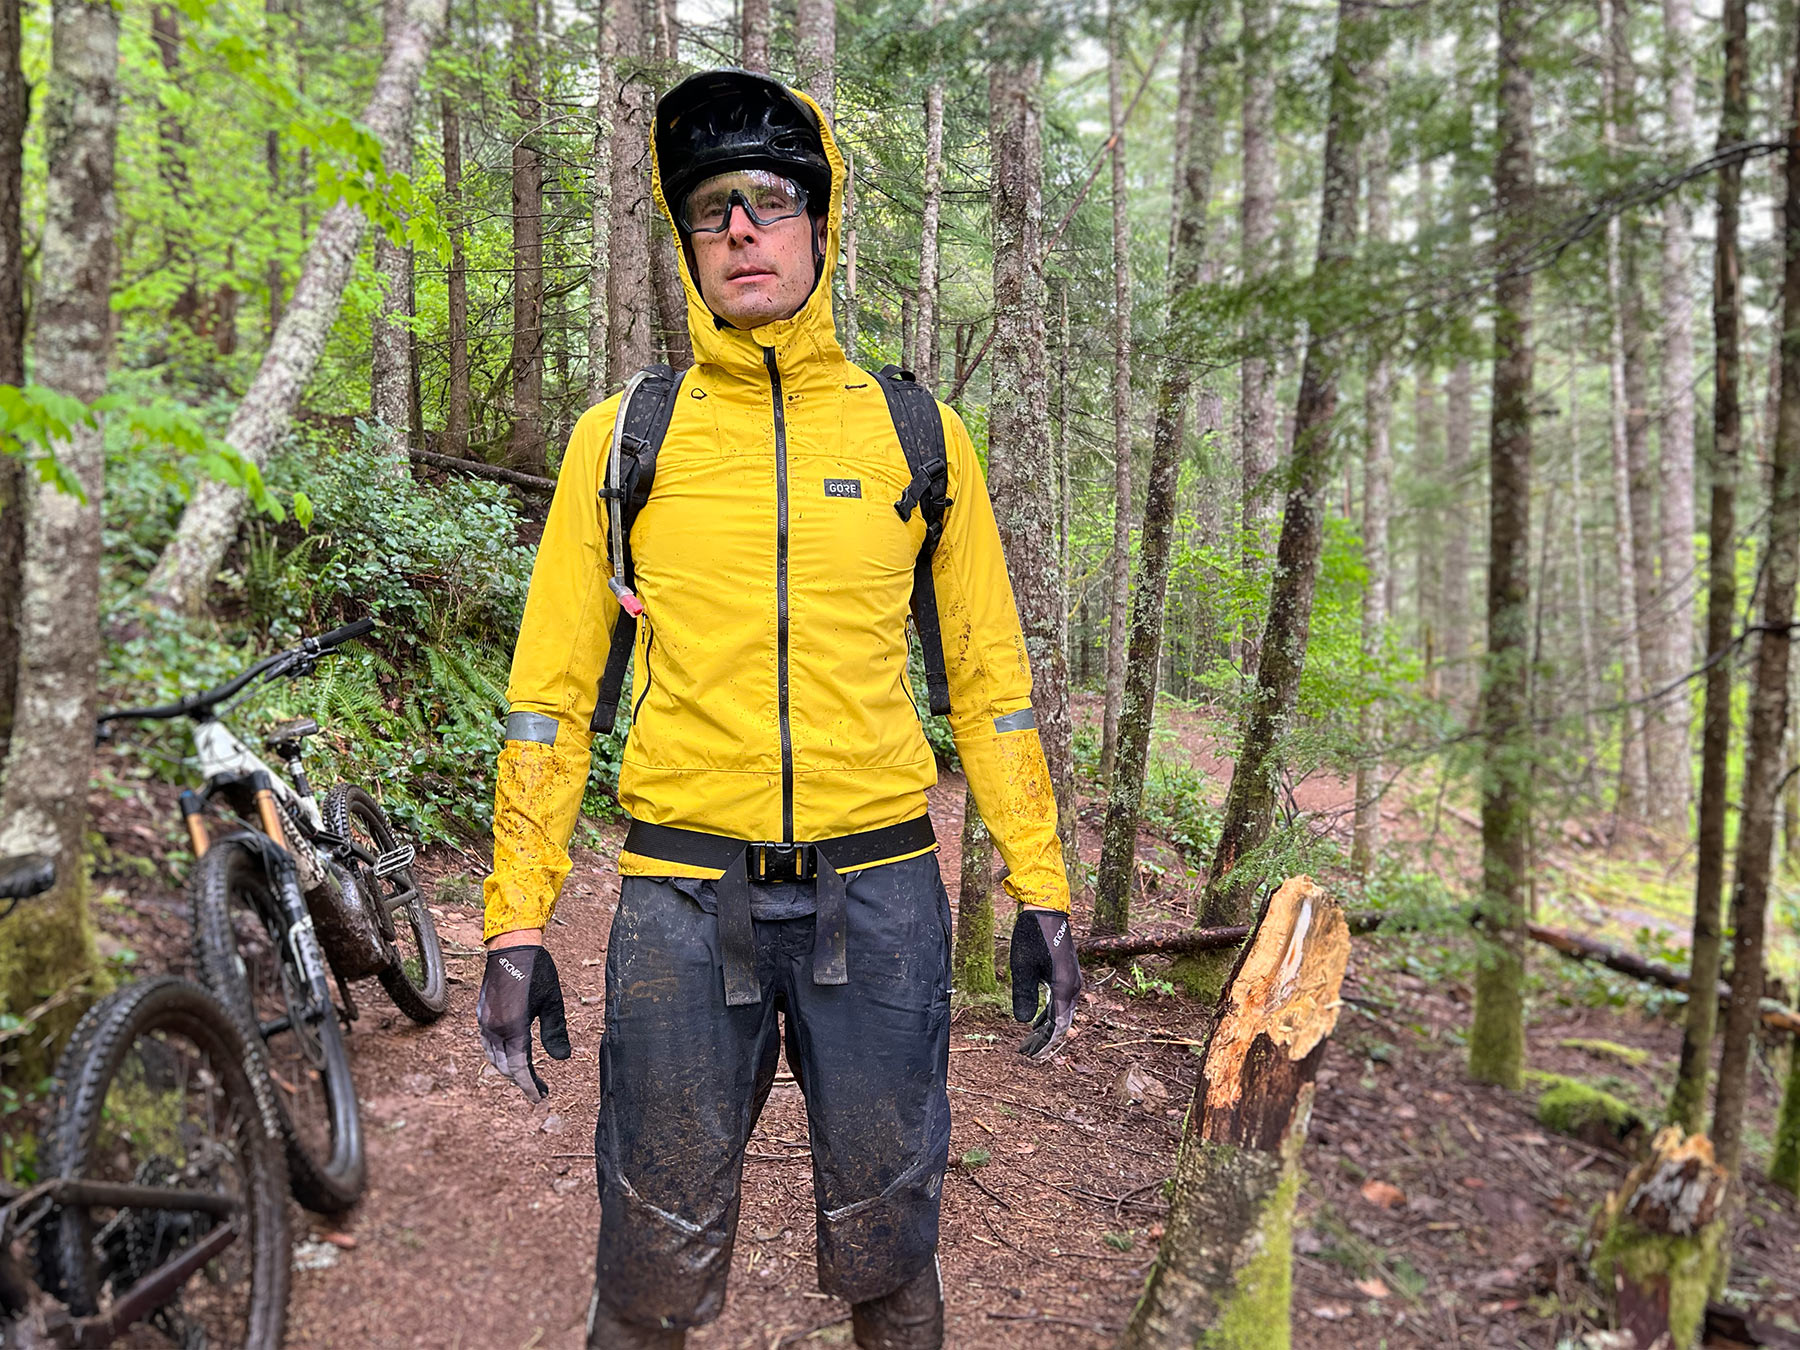 gorewear Lupra mountain bike jacket review with mud splatter